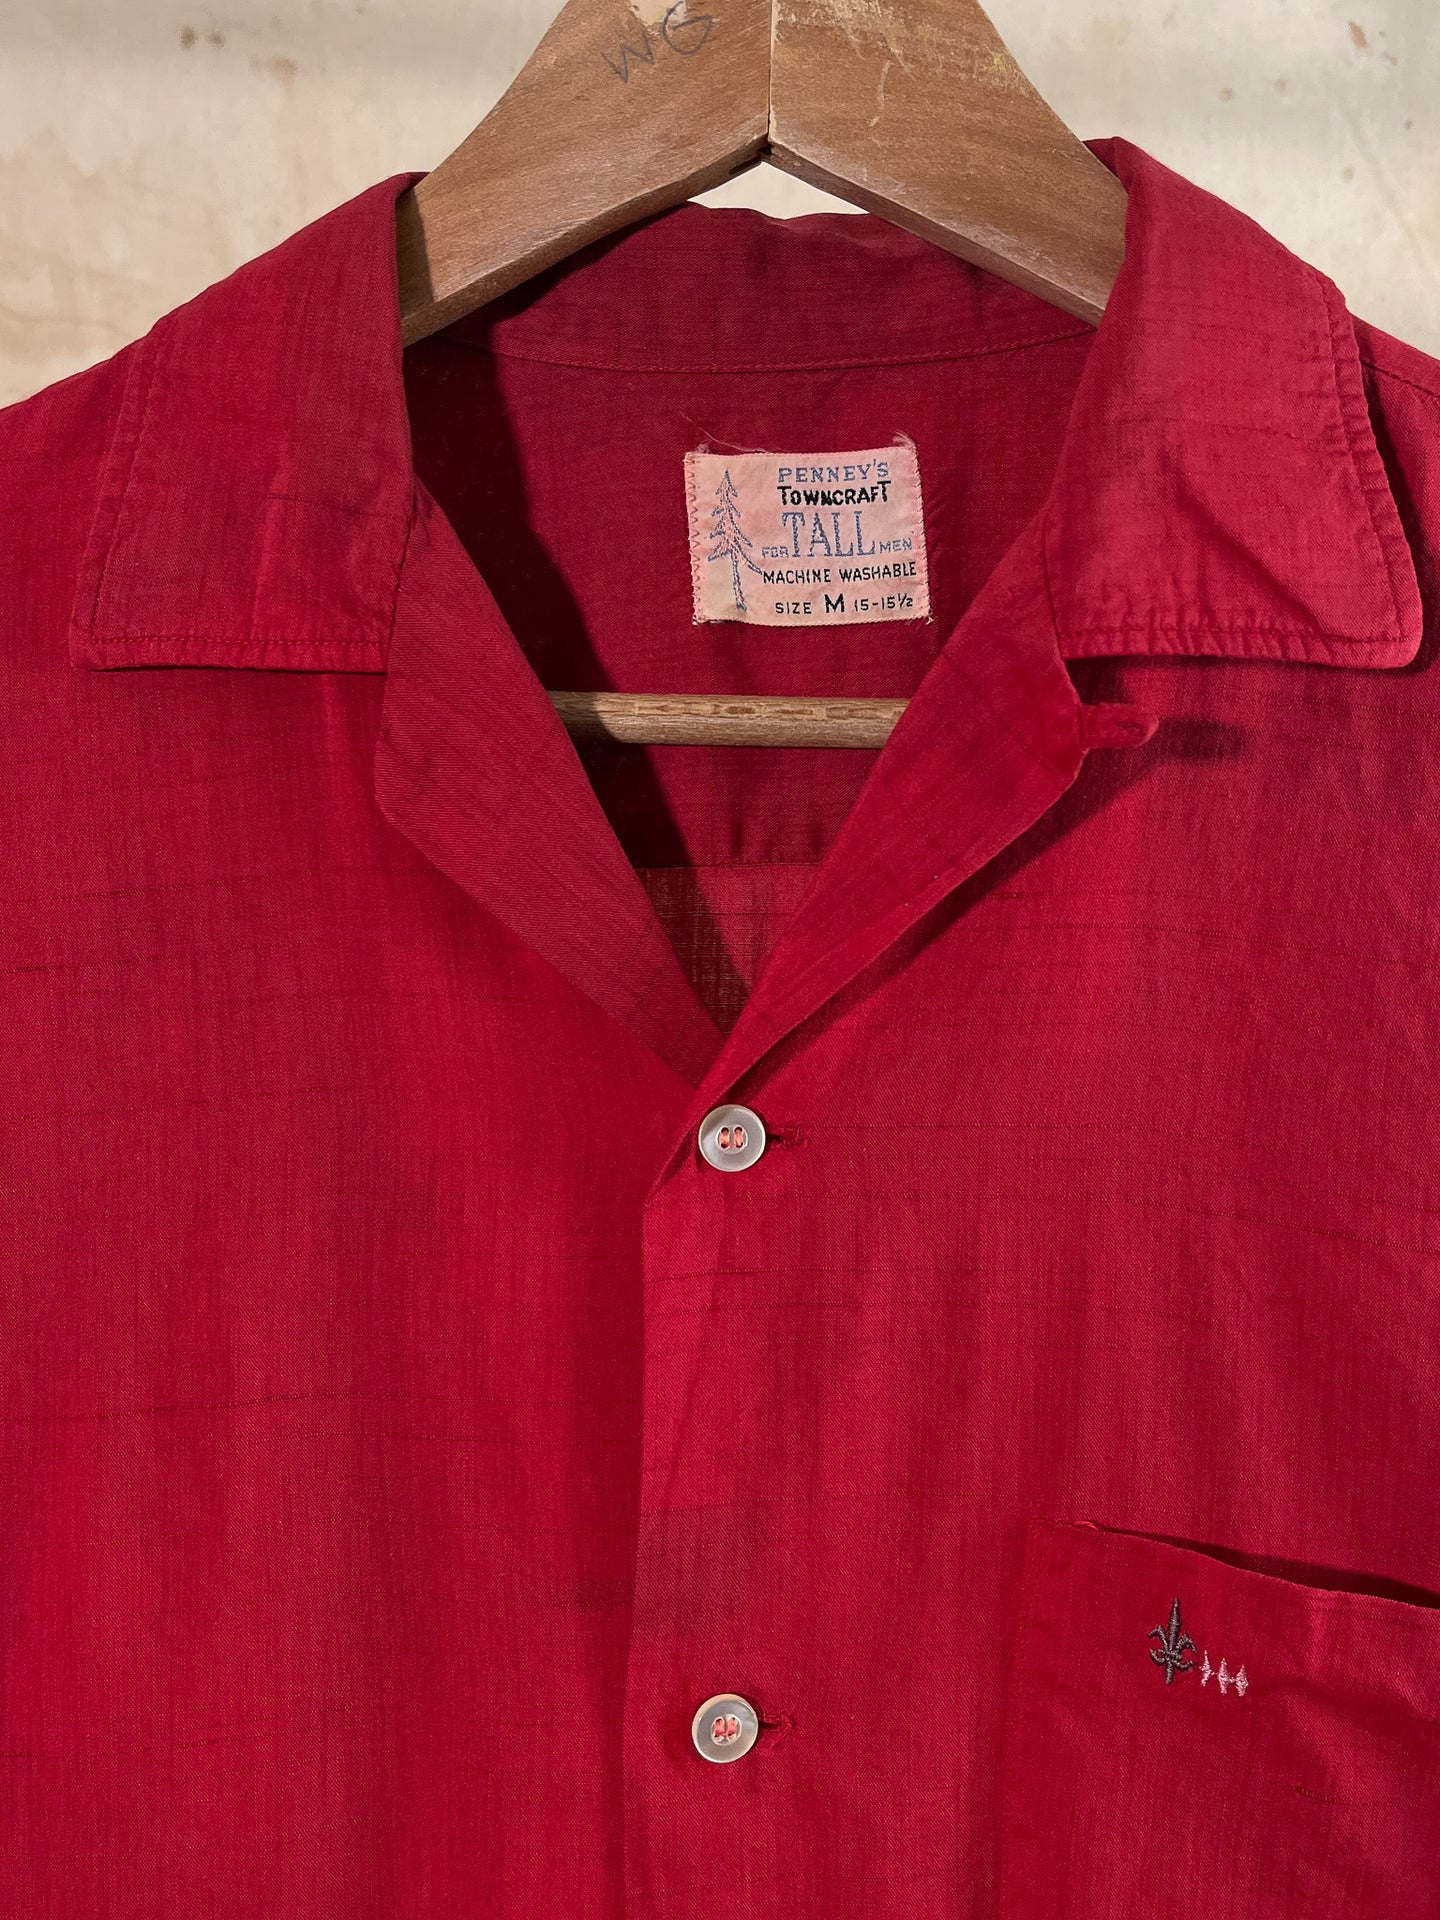 Towncraft Red Camp Collar Men's Shirt c. 1950s-60s